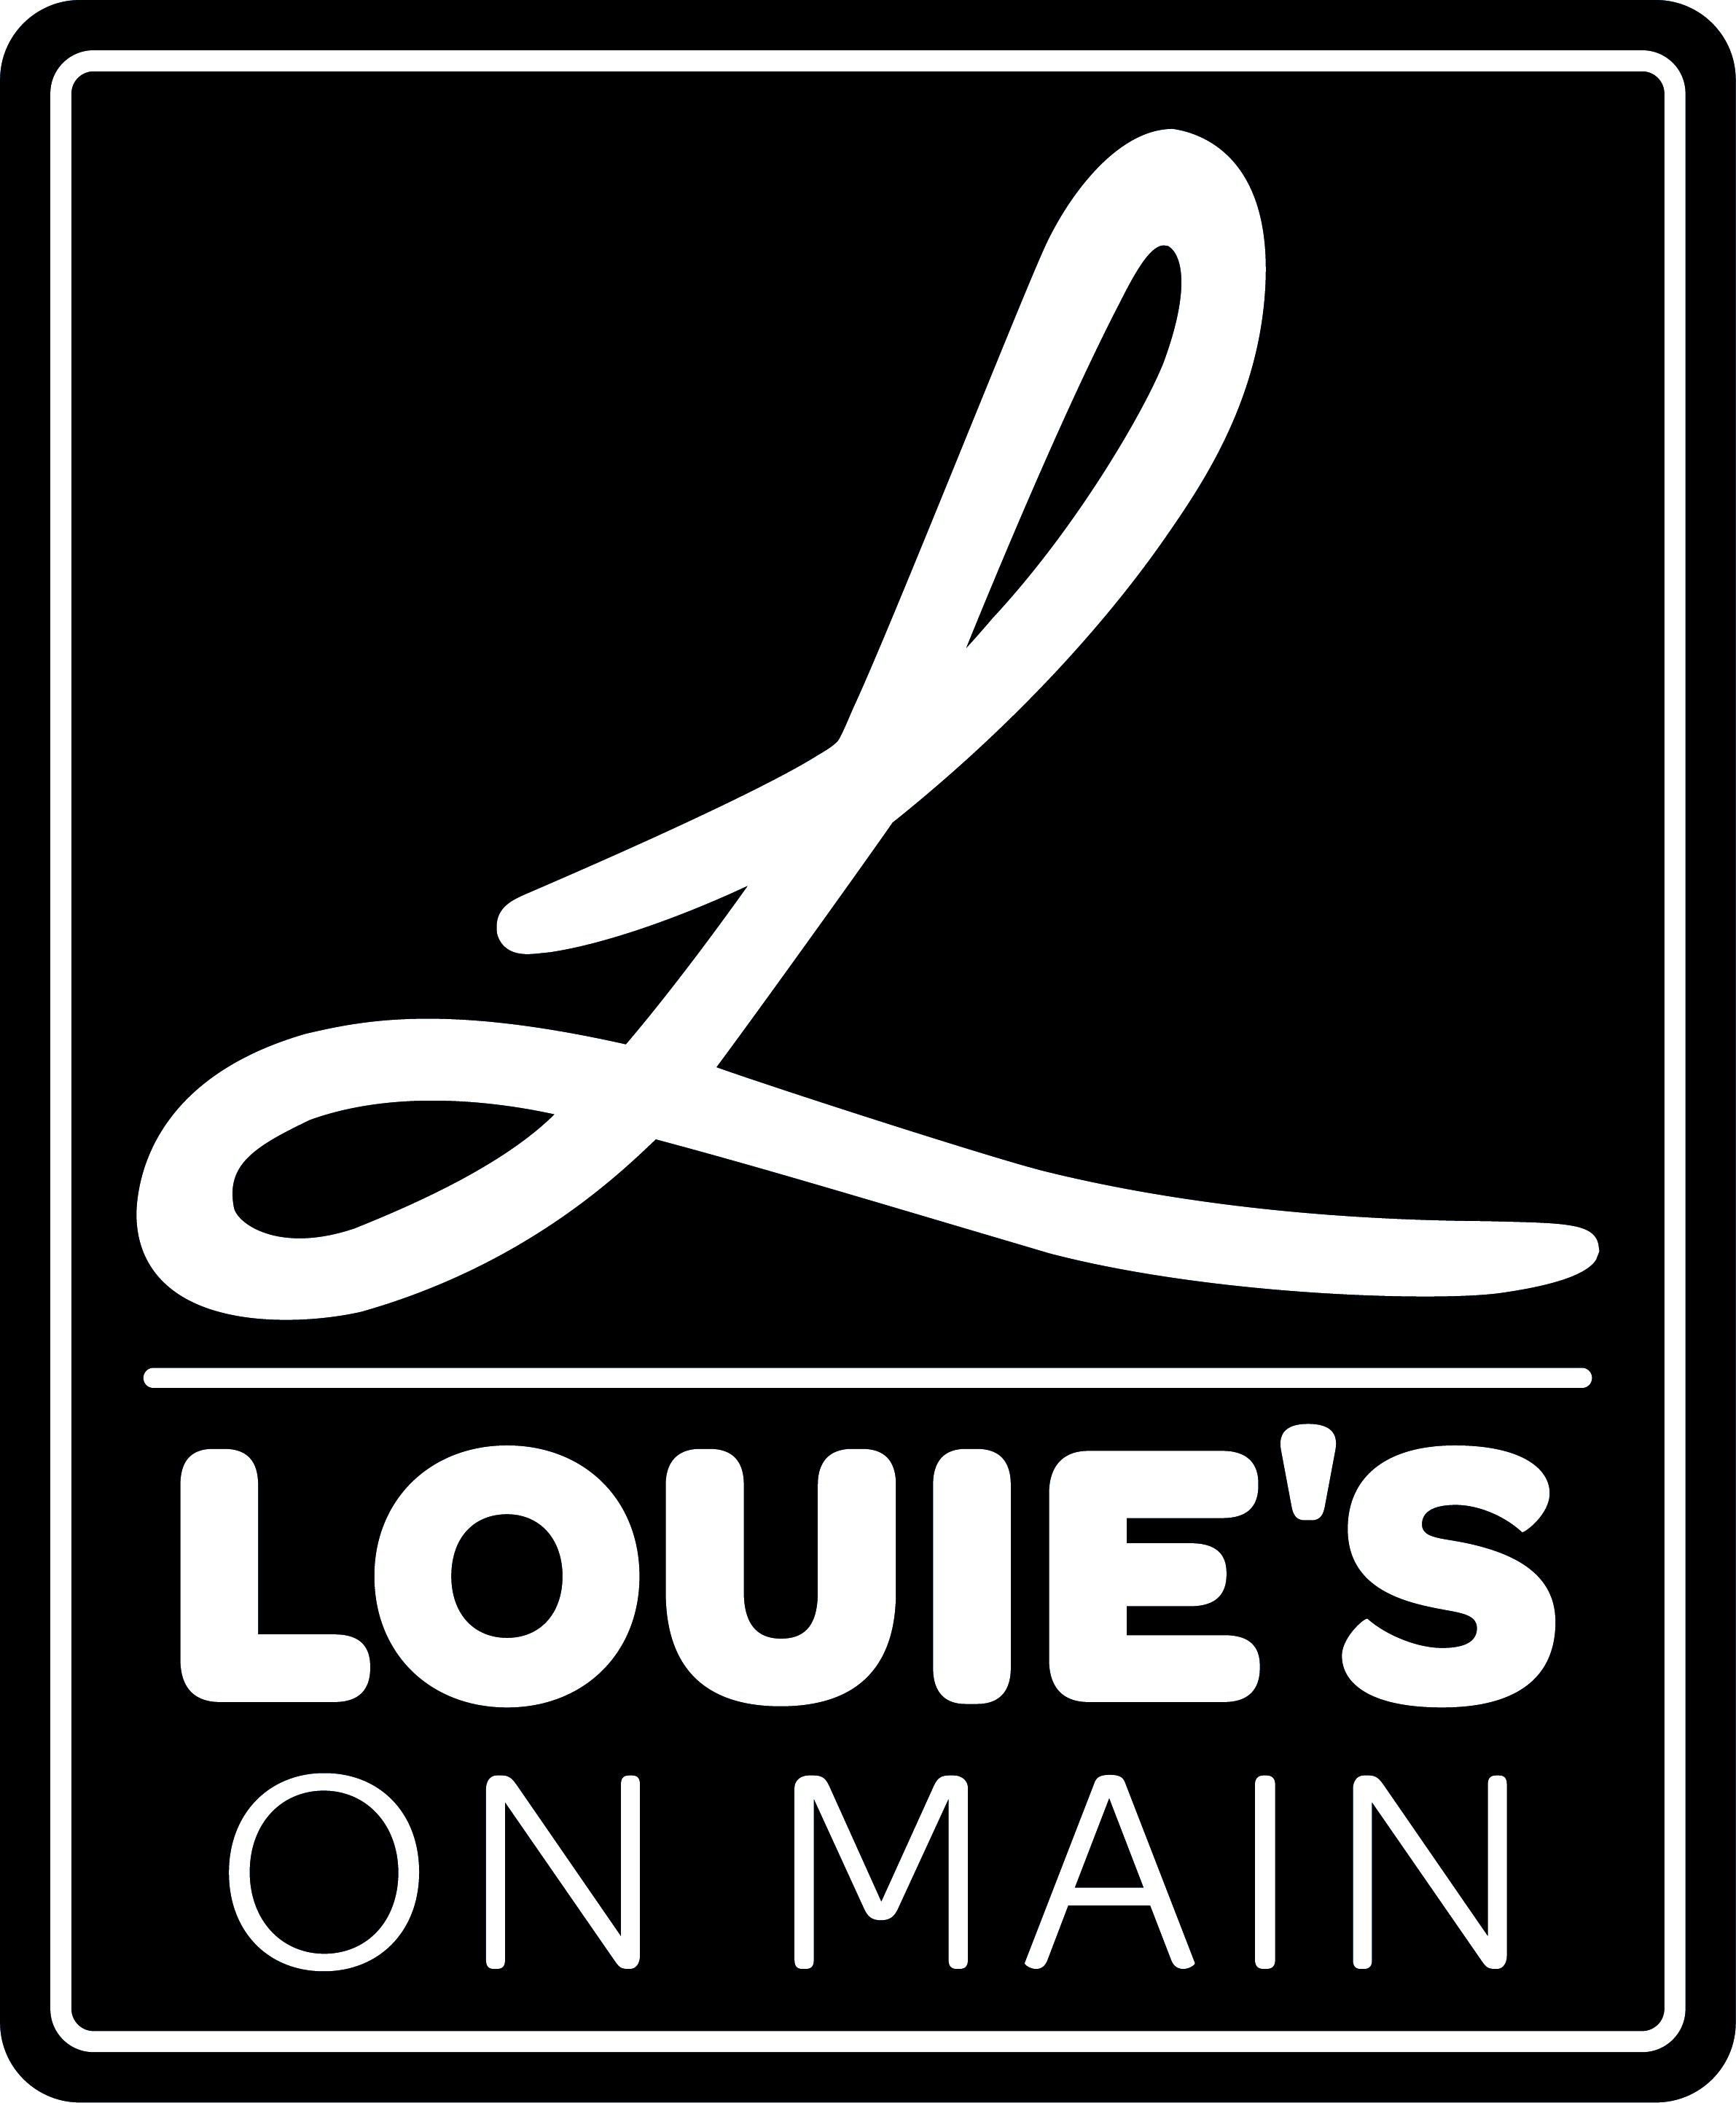 Louie's on Main